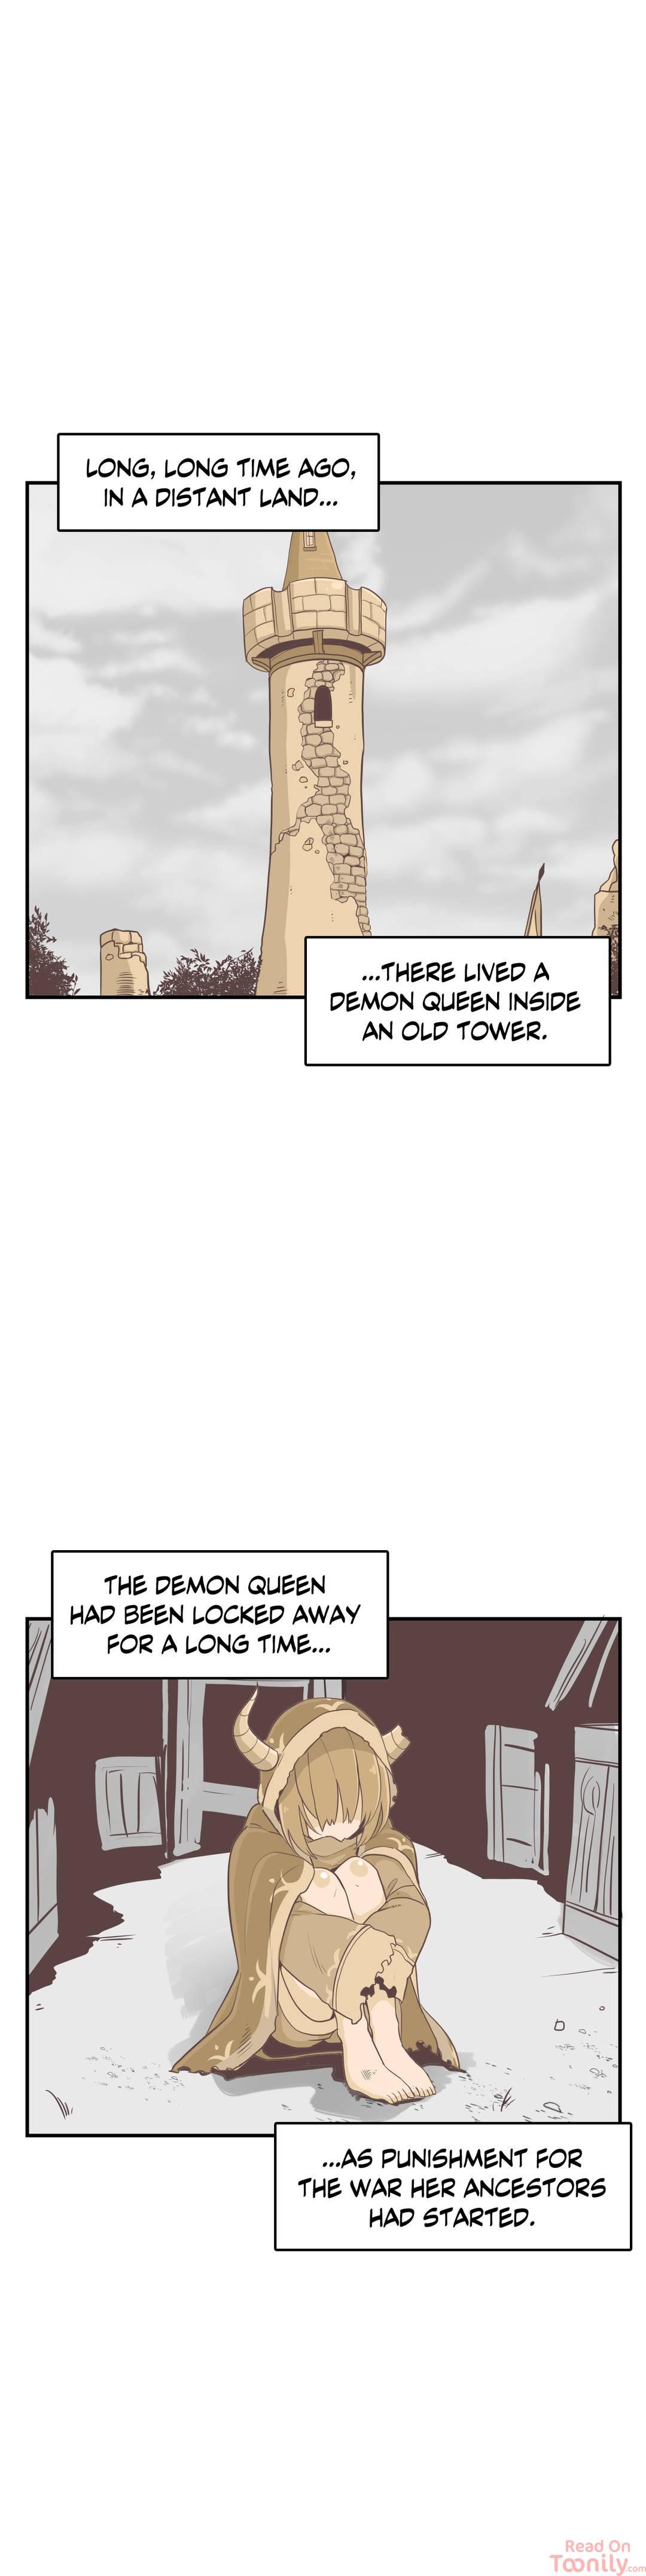 Erotic Manga Department! - Page 1